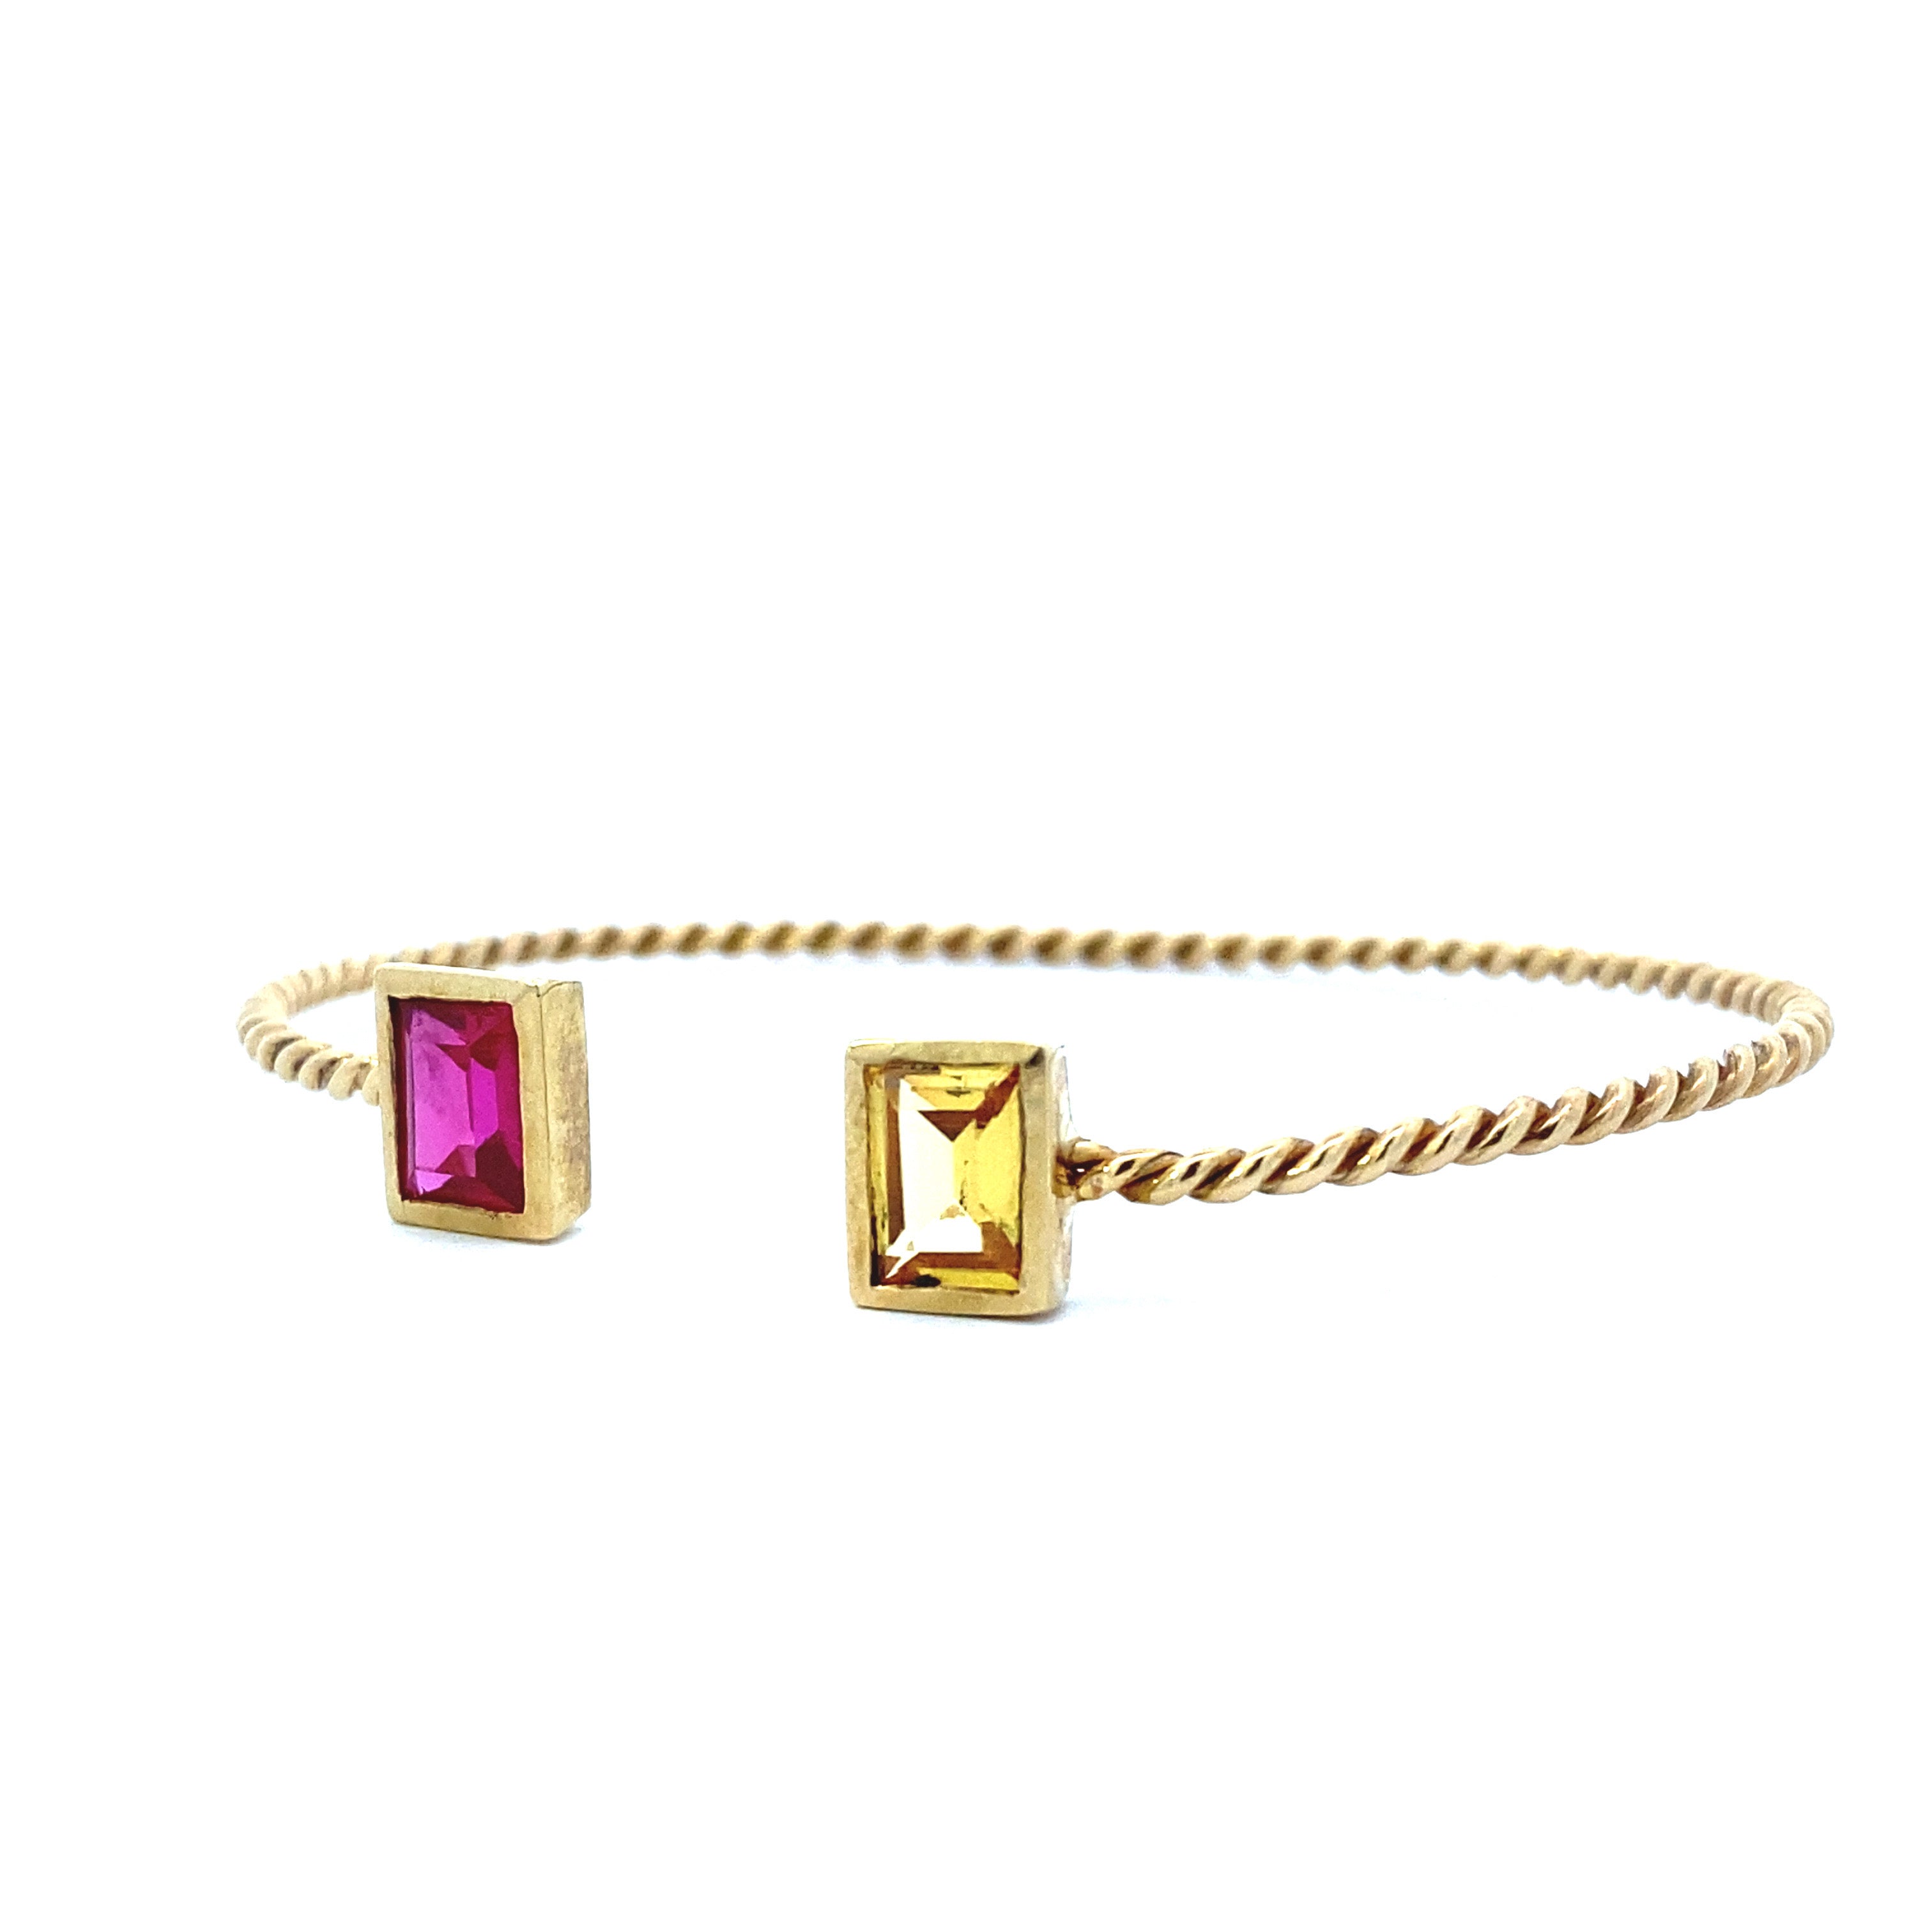 Daisy Bangle Bracelet 10K Gold